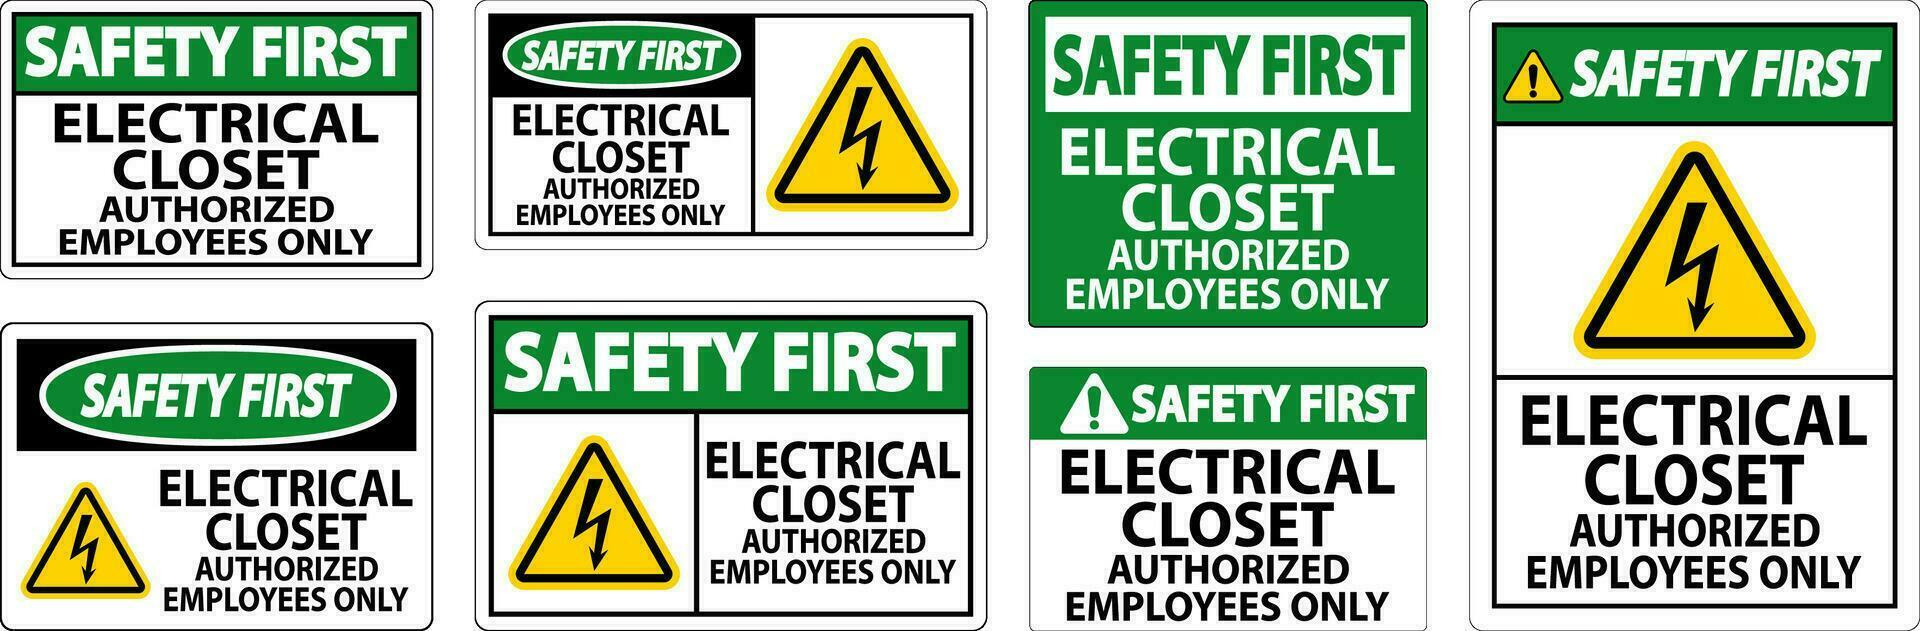 segurança primeiro placa elétrico armário de roupa - autorizado empregados só vetor